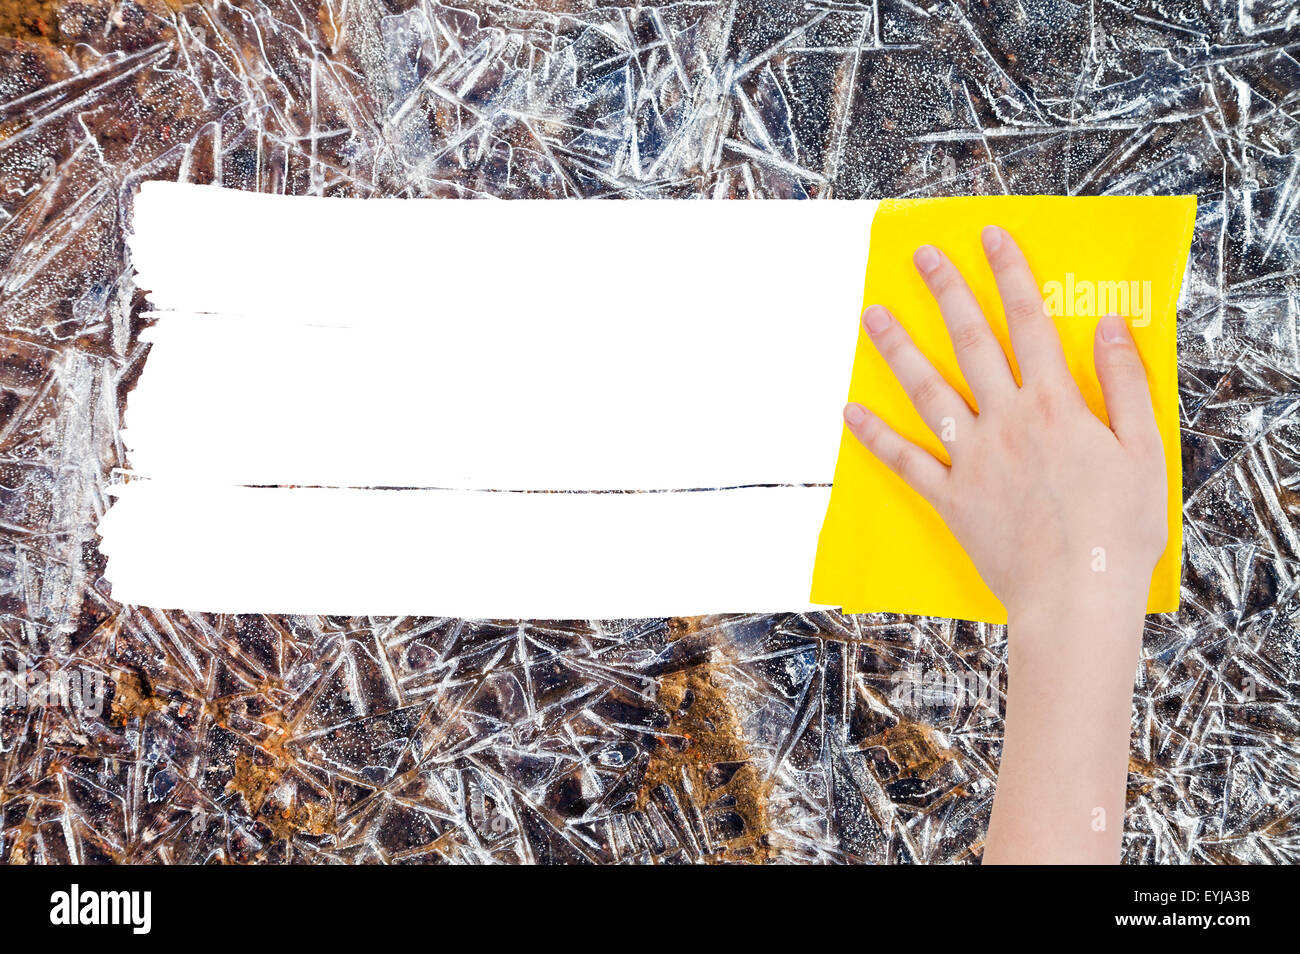 Saison Konzept - Hand löscht gefrorenen Eis durch gelbe Lappen aus Bild und weißem leeren textfreiraum erscheinen Stockfoto